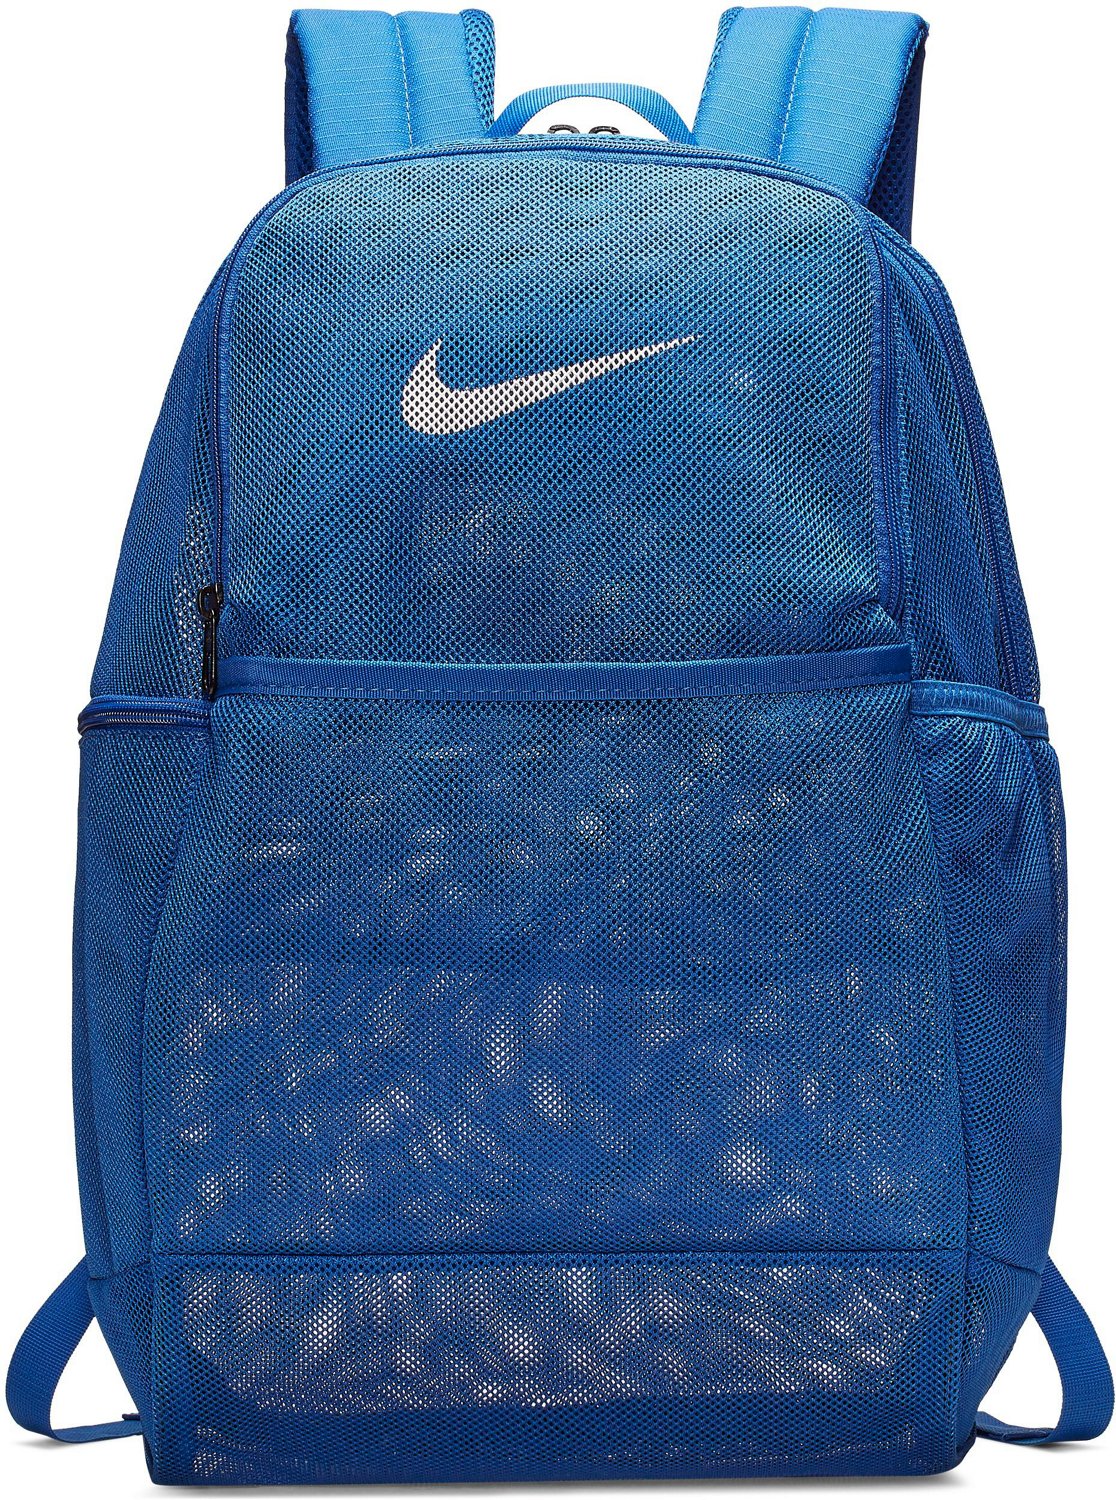 academy sports nike mesh backpack